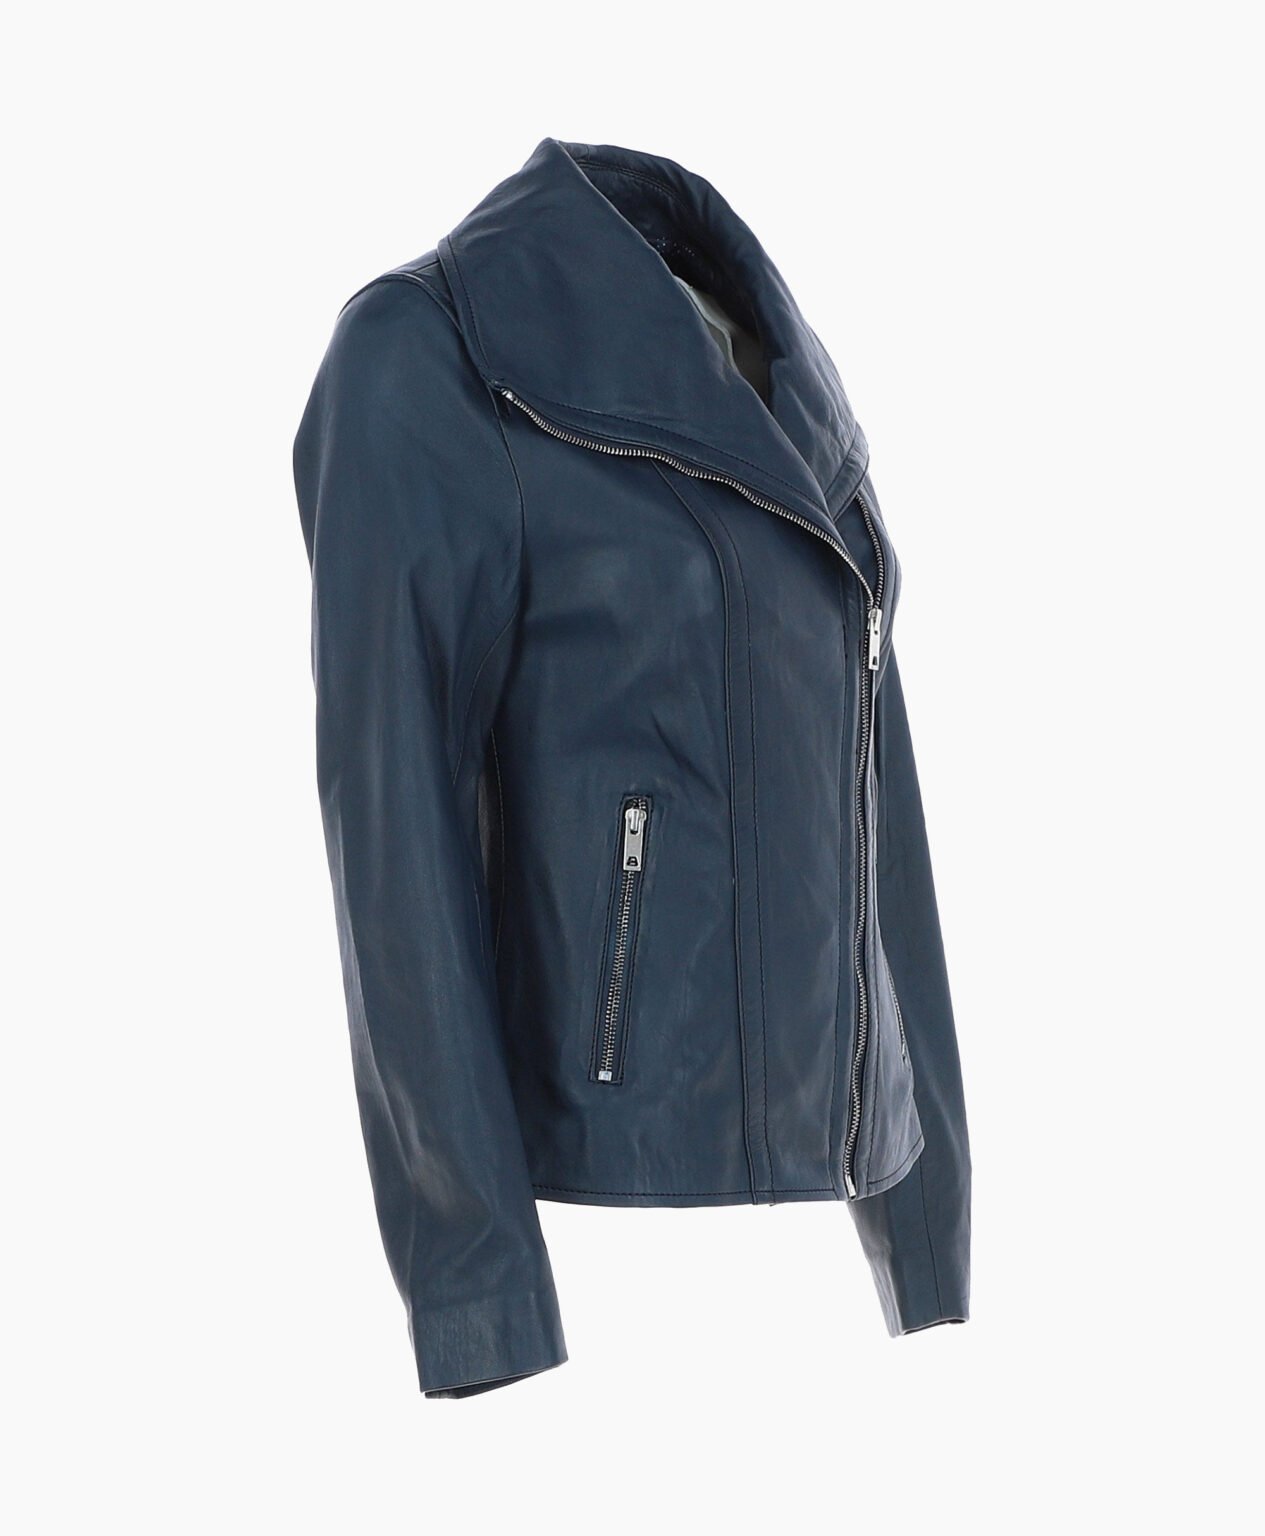 vogue-jacket-leather-jacket-fashion-collar-navy-shelby-image203